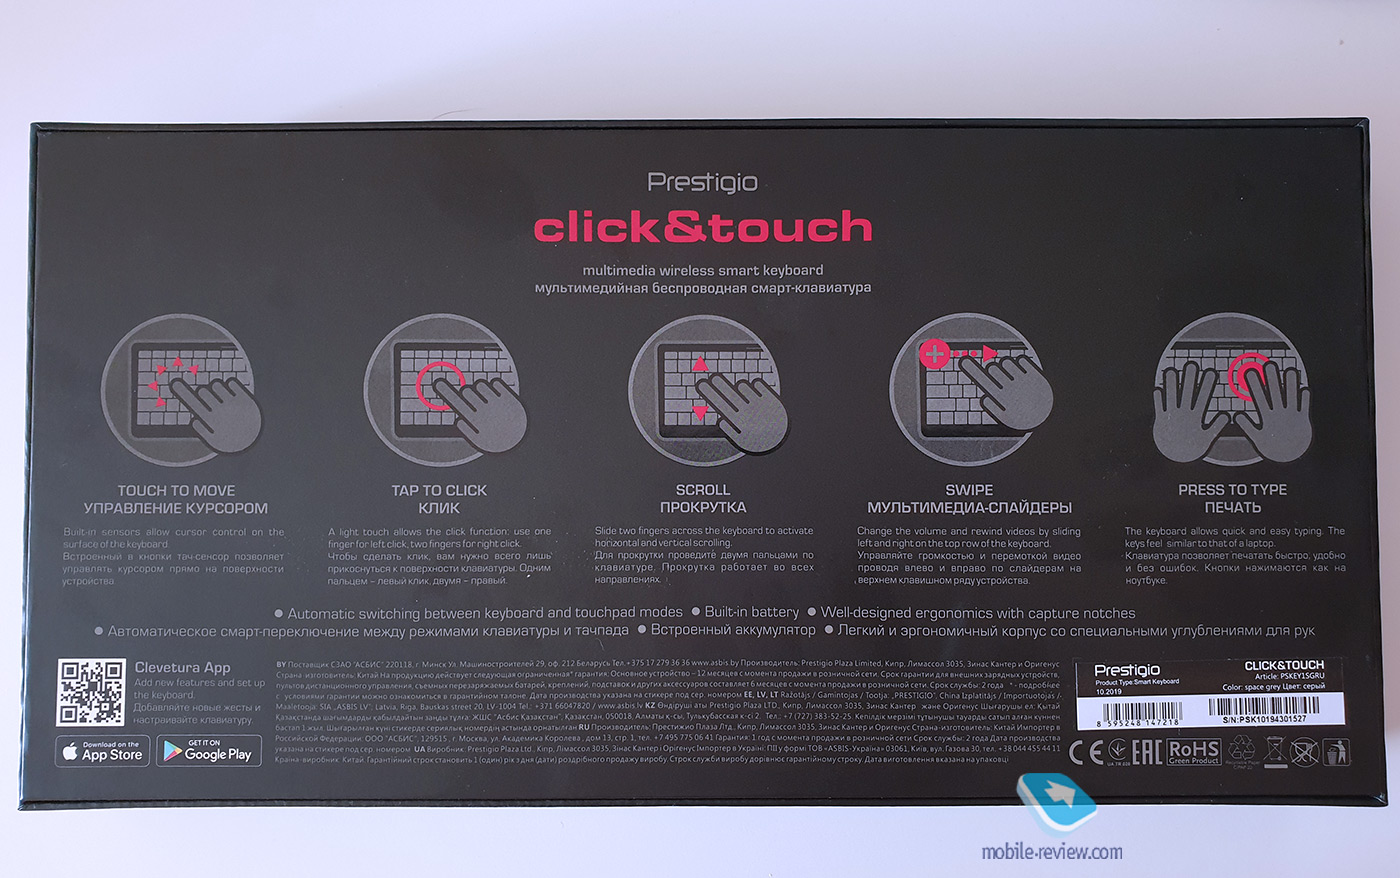    Android Tv  : Prestigio Click & Touch